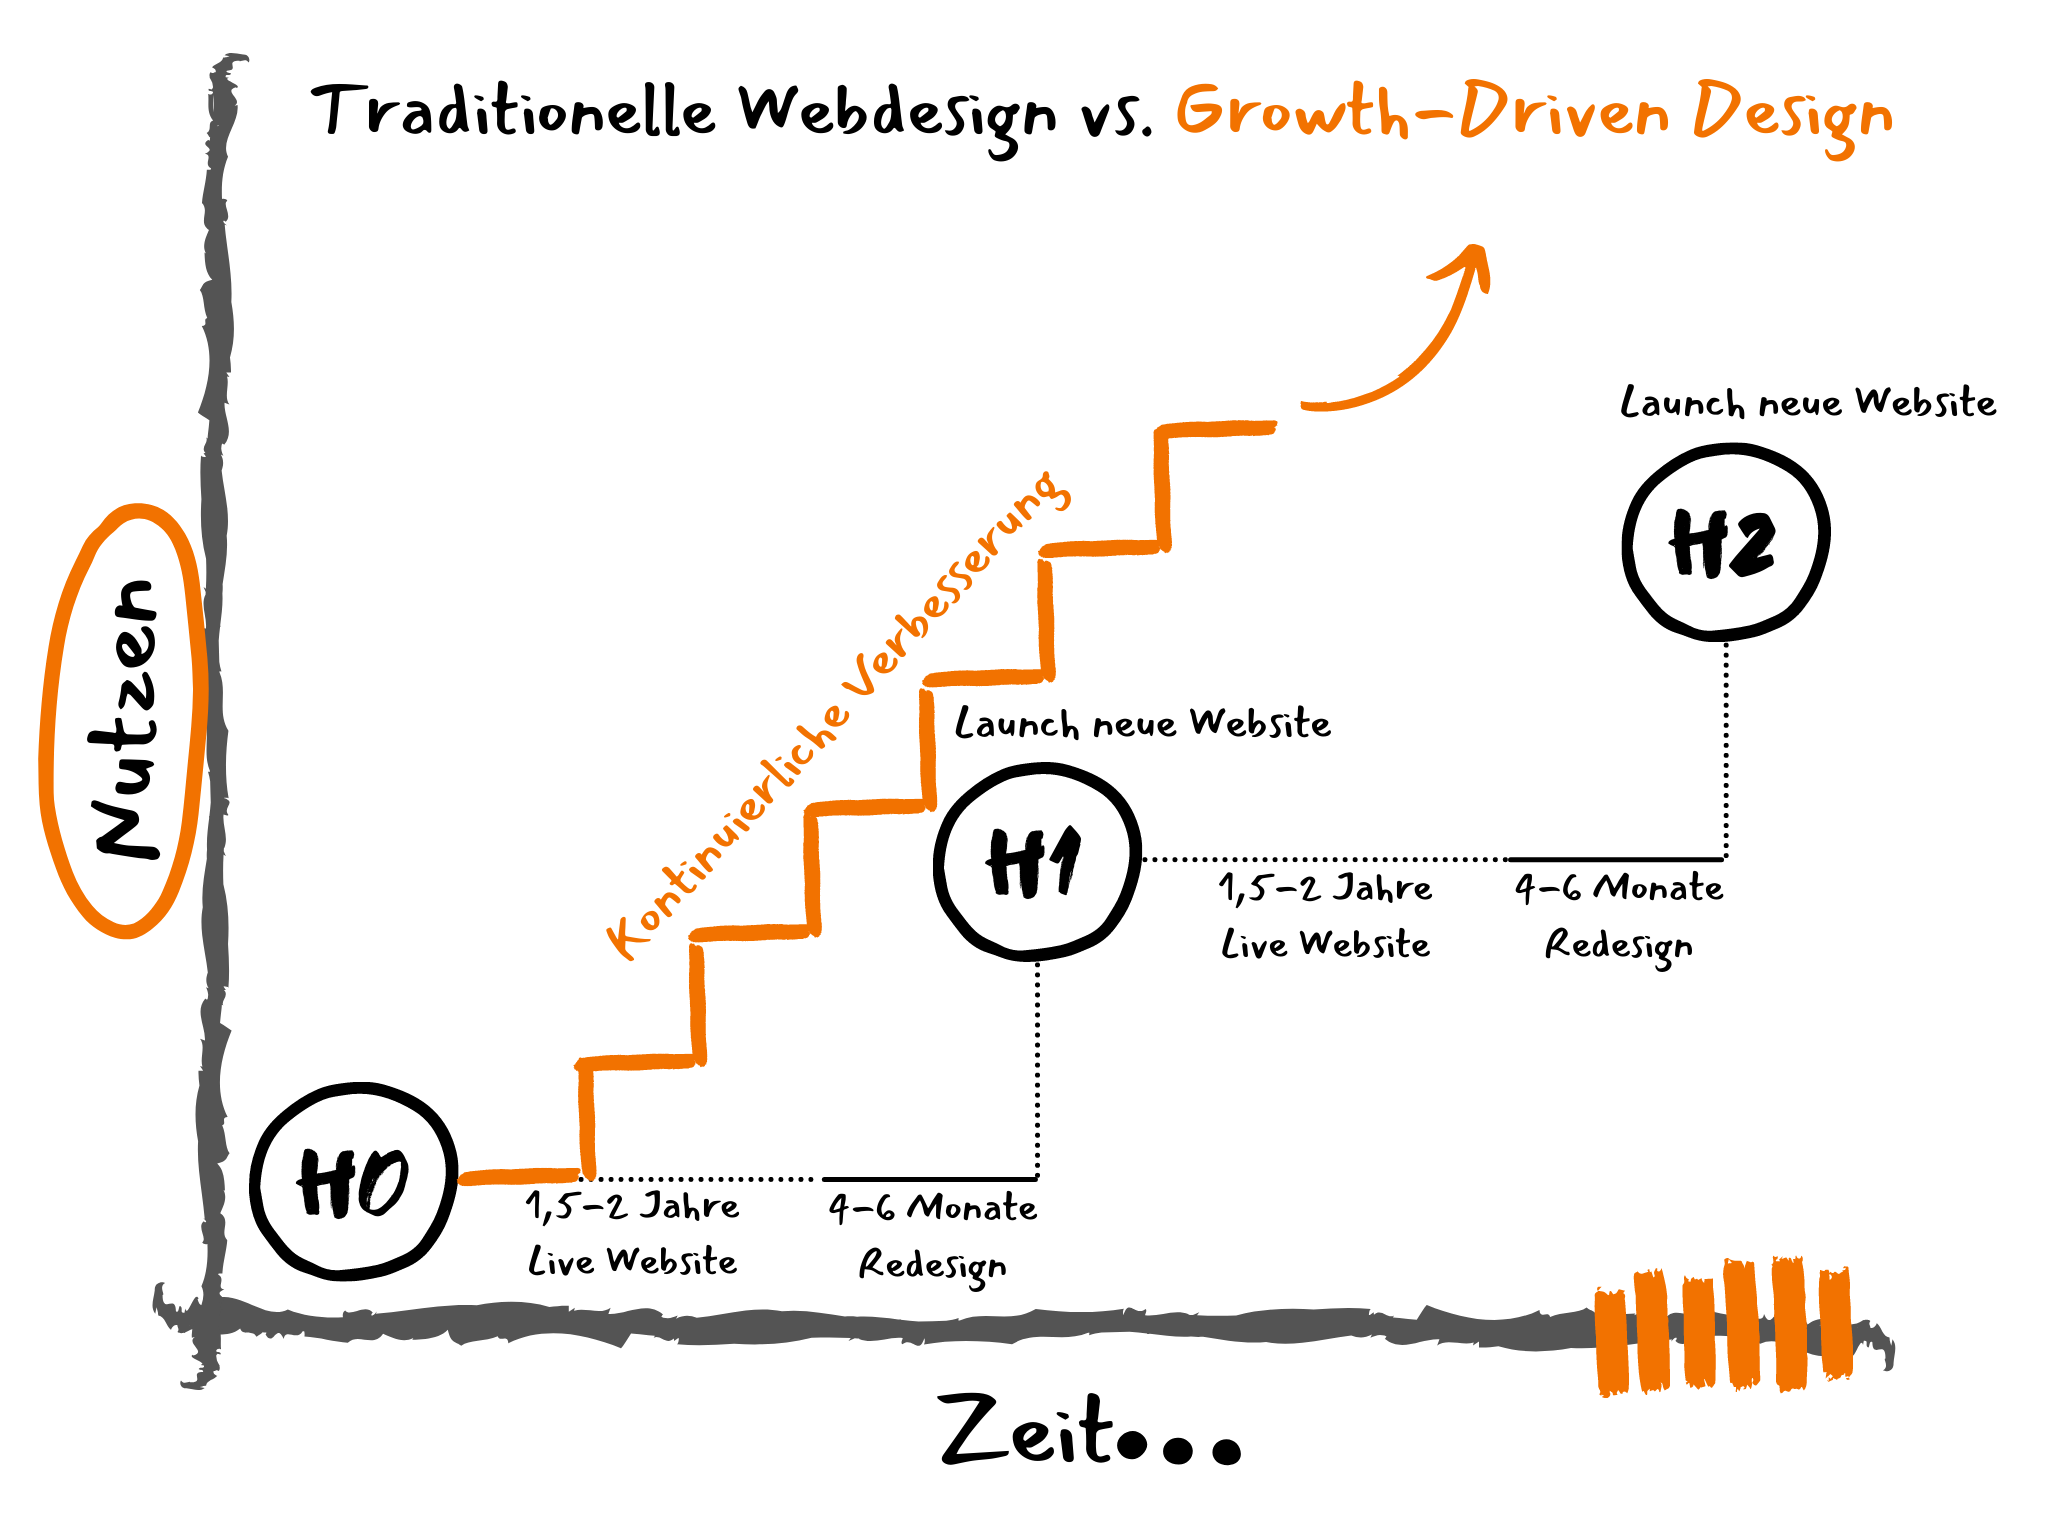 Grafik zu Growth-Driven Design im Vergleich zu traditionellem Webdesign